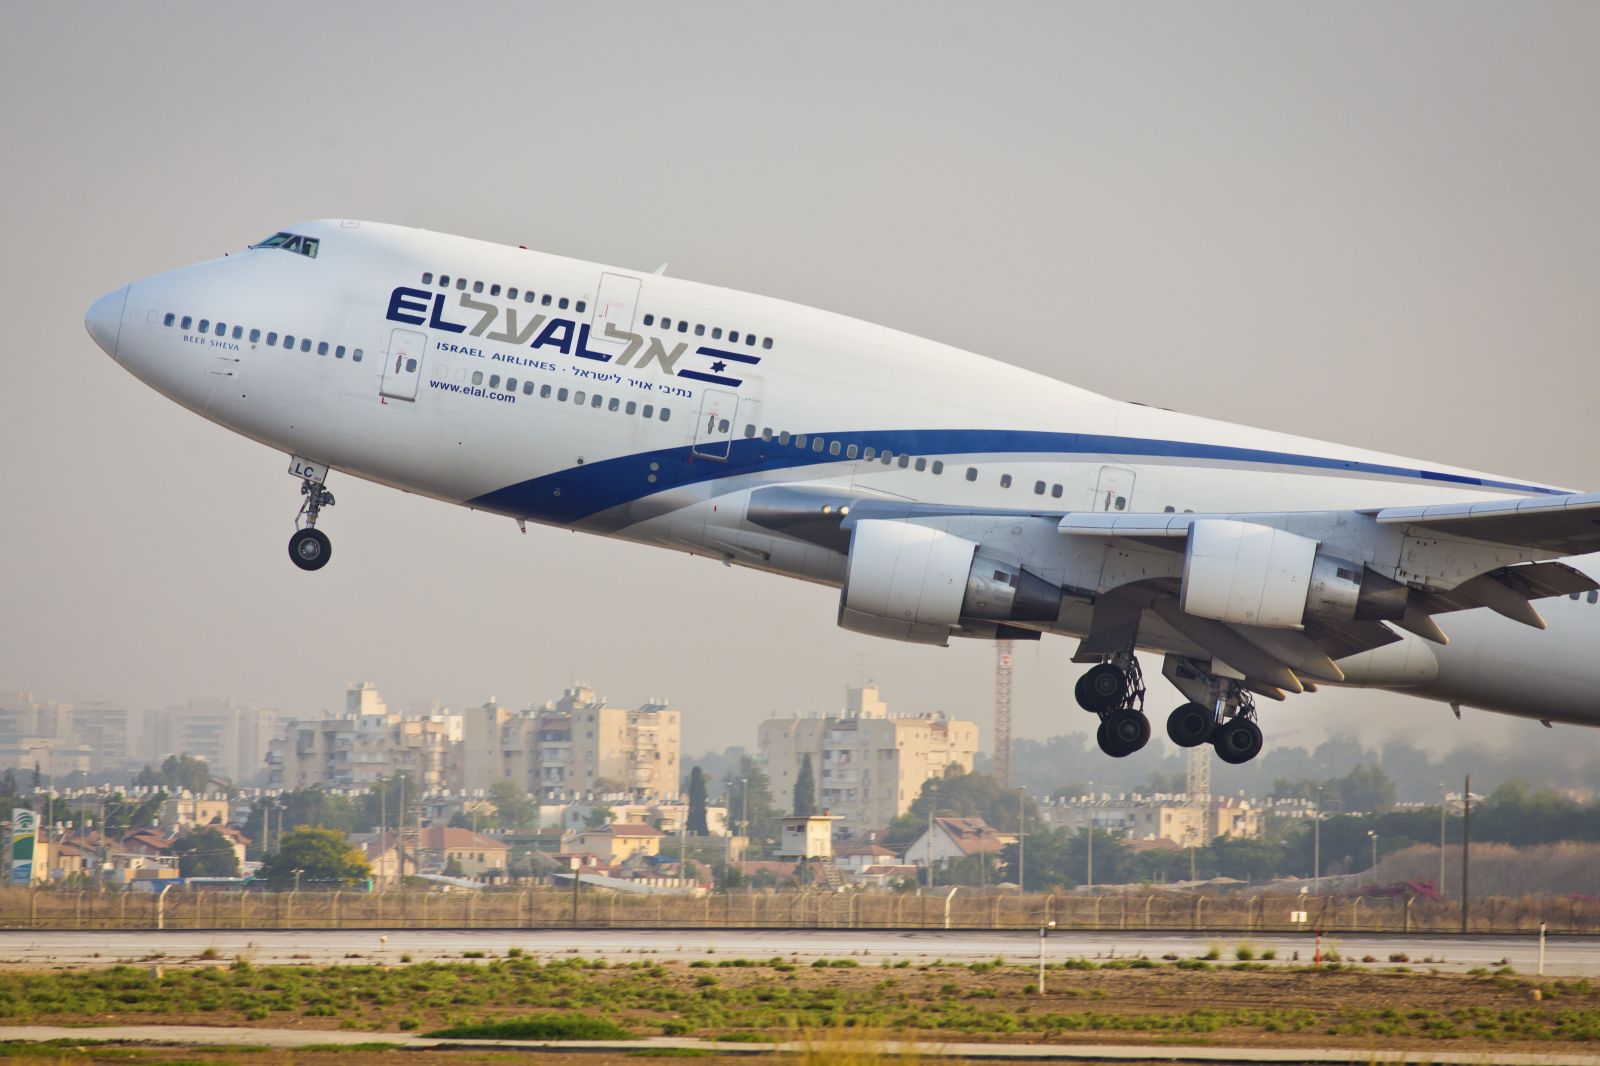 Самолеты эль аль. Израильские авиалинии Эль Аль. El al Israel Airlines самолеты. Израильской авиакомпанией el al(«Эль-Аль»). Авиабилеты израильские авиалинии.